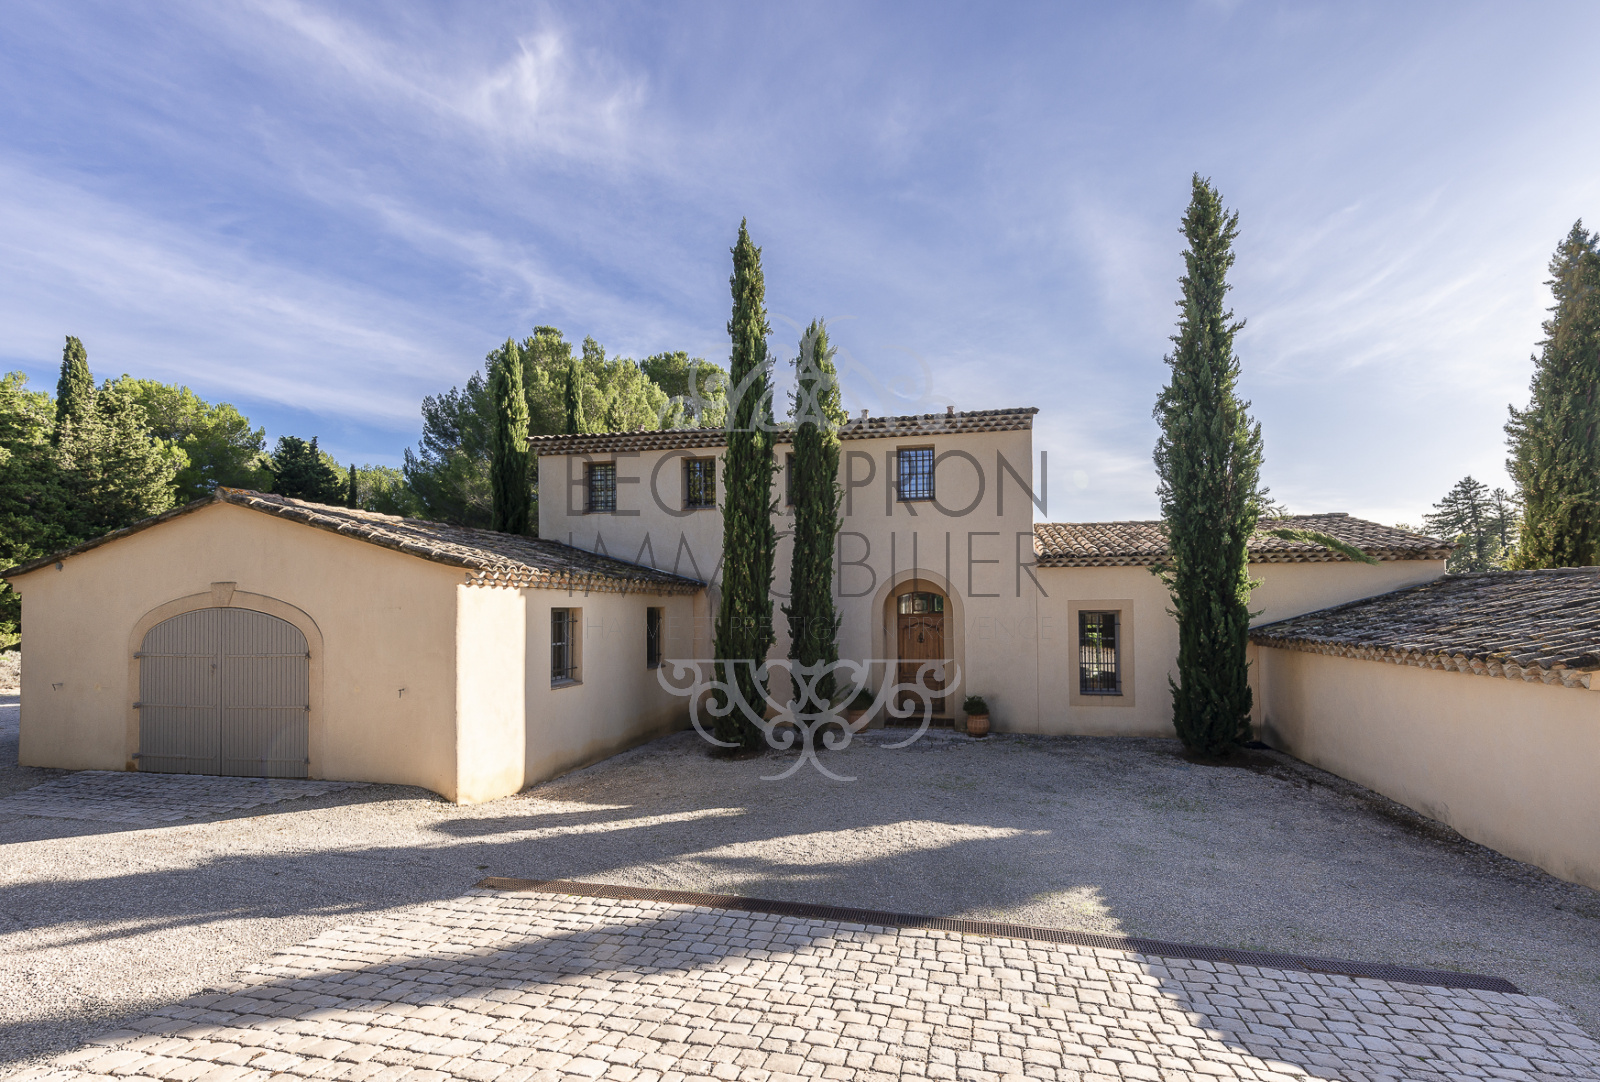 Image_5, Maisons (maison, propriÃ©tÃ©, villa, Mas,bastide, maison de village), Aix-en-Provence, ref :988 VM